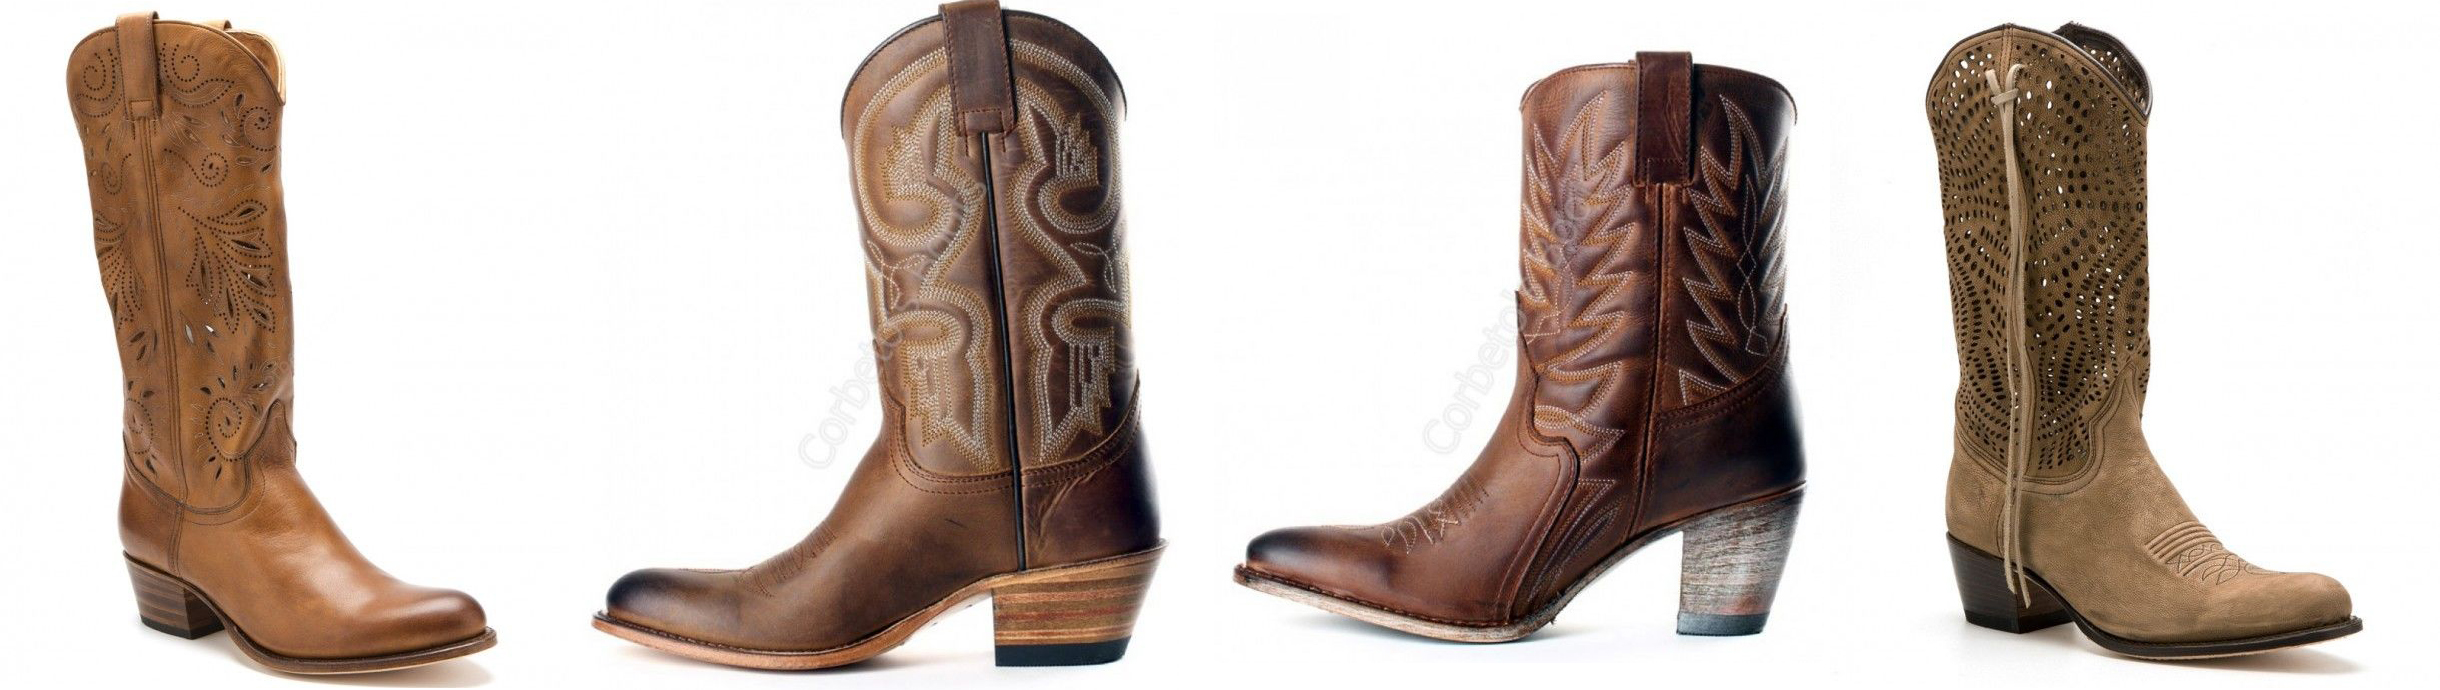 Botas cowboy, tu estilo también en verano - Corbeto's Boots Blog